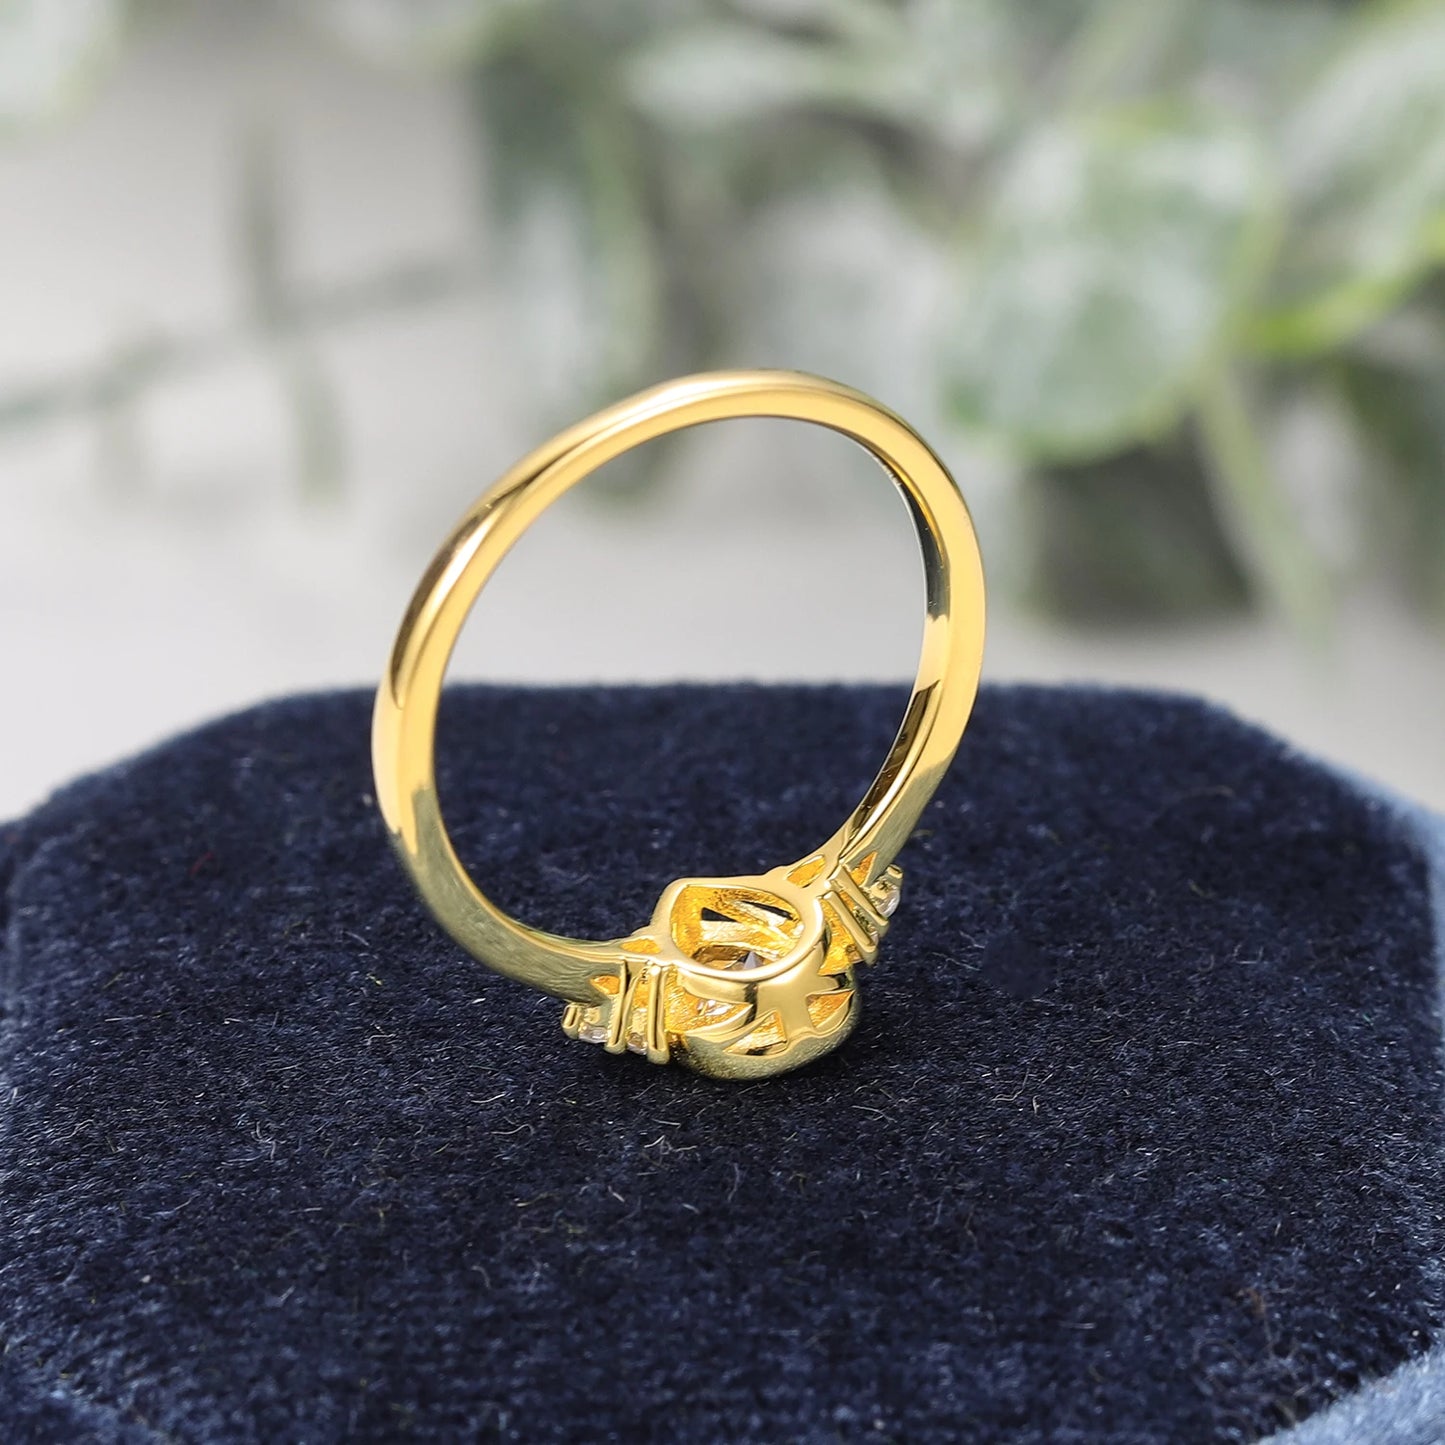 GEM'S BALLET 0.8 Ct Pear Cut Moissanite Bezel Setting Engagement Rings 925 Sterling Silver Moissanite Promise Ring Gift For Her